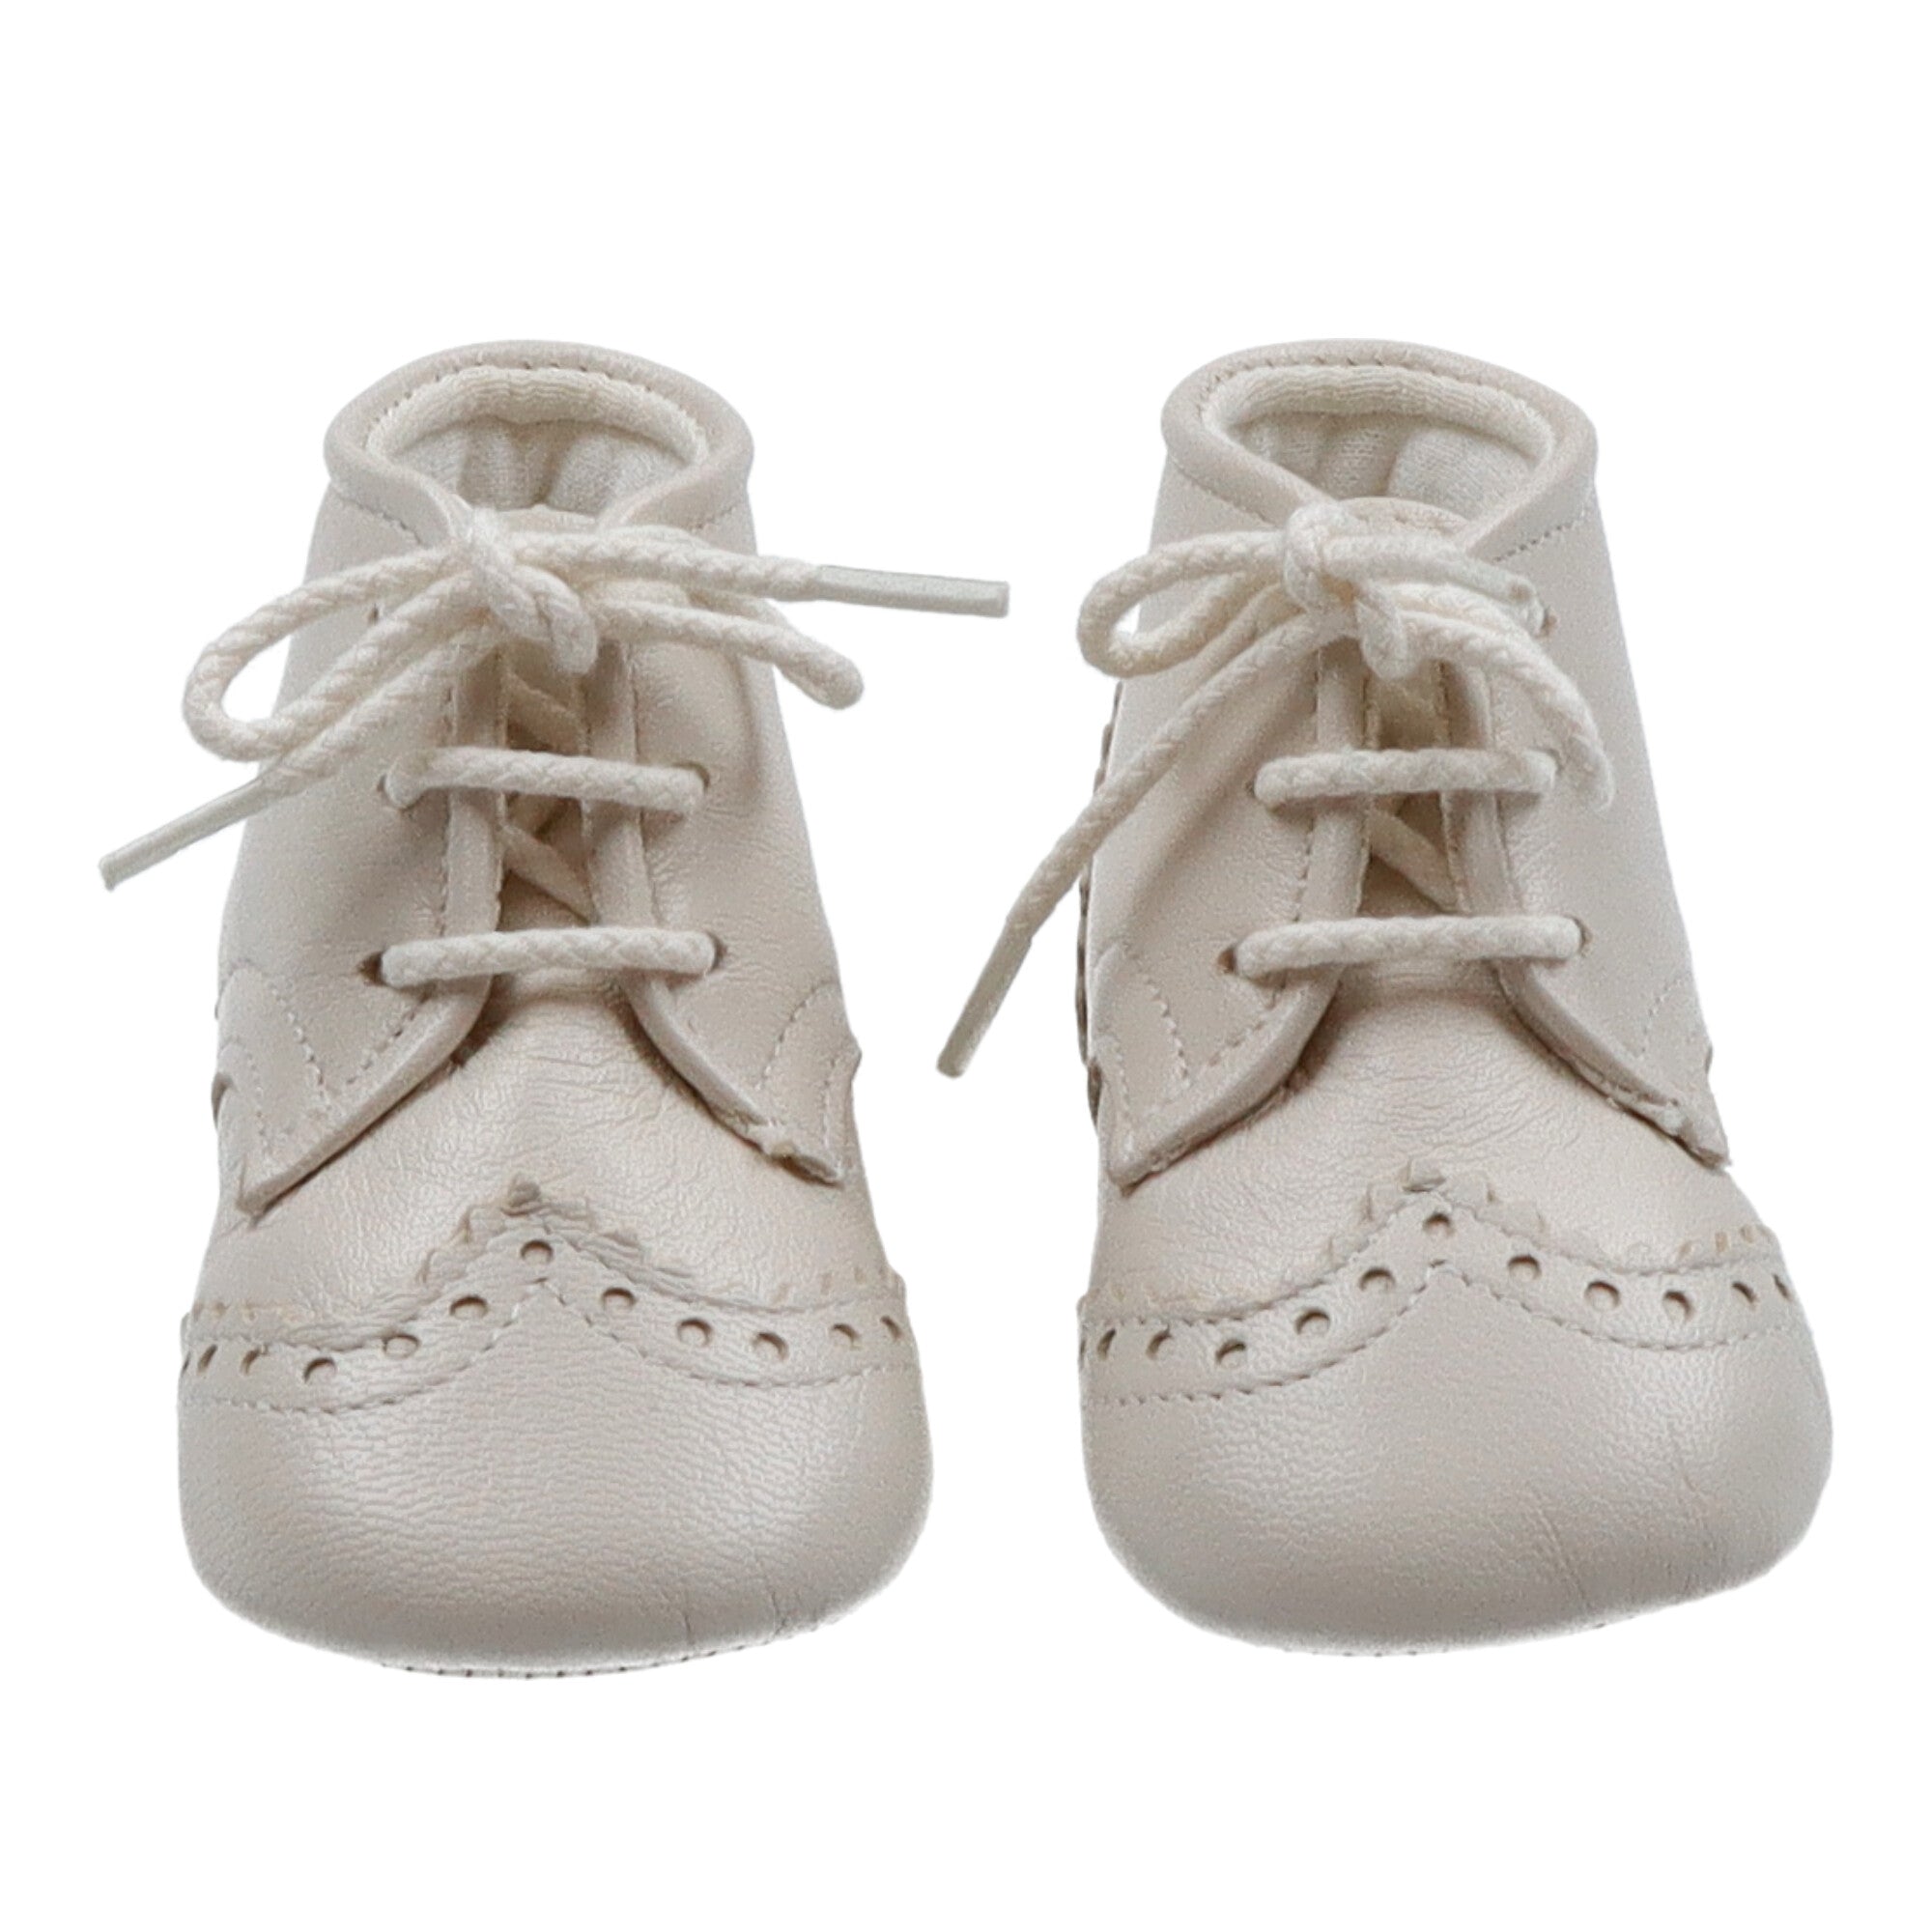 scarpa-per-neonato-in-nappa-colore-beige-con-lacci